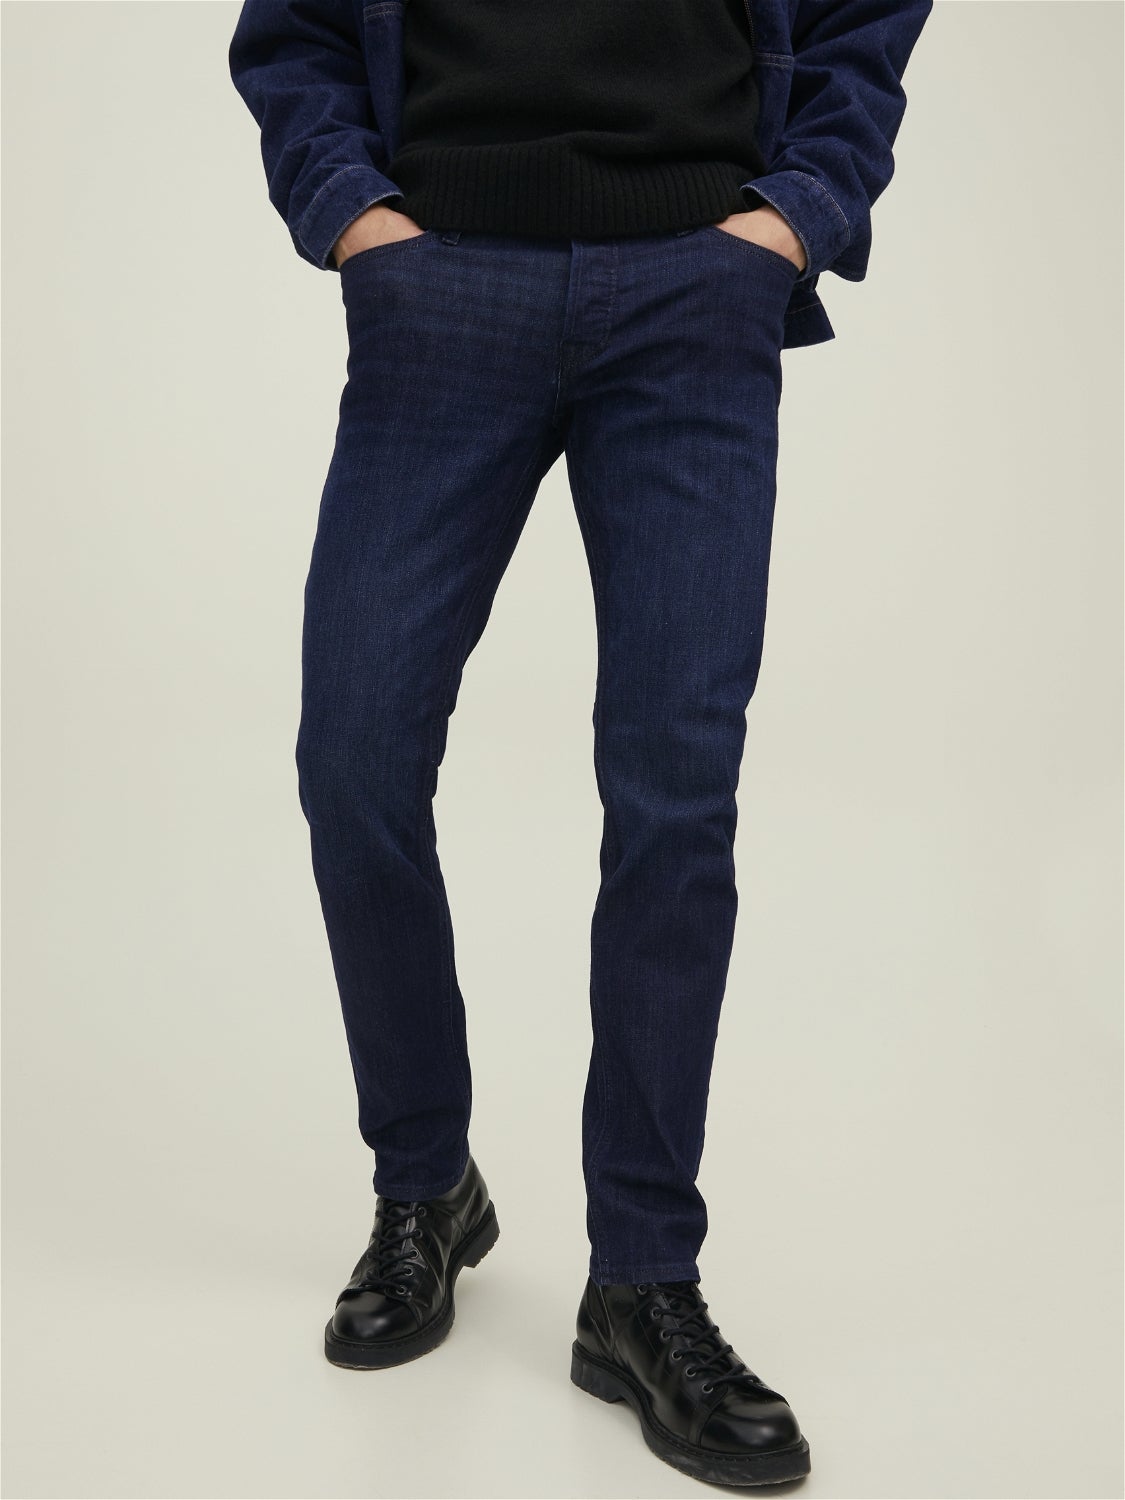 glenn foncé Jean Jack & Jones pour homme en coloris Bleu jean slim à déchirures Homme Vêtements Jeans Jeans slim Intelligence 